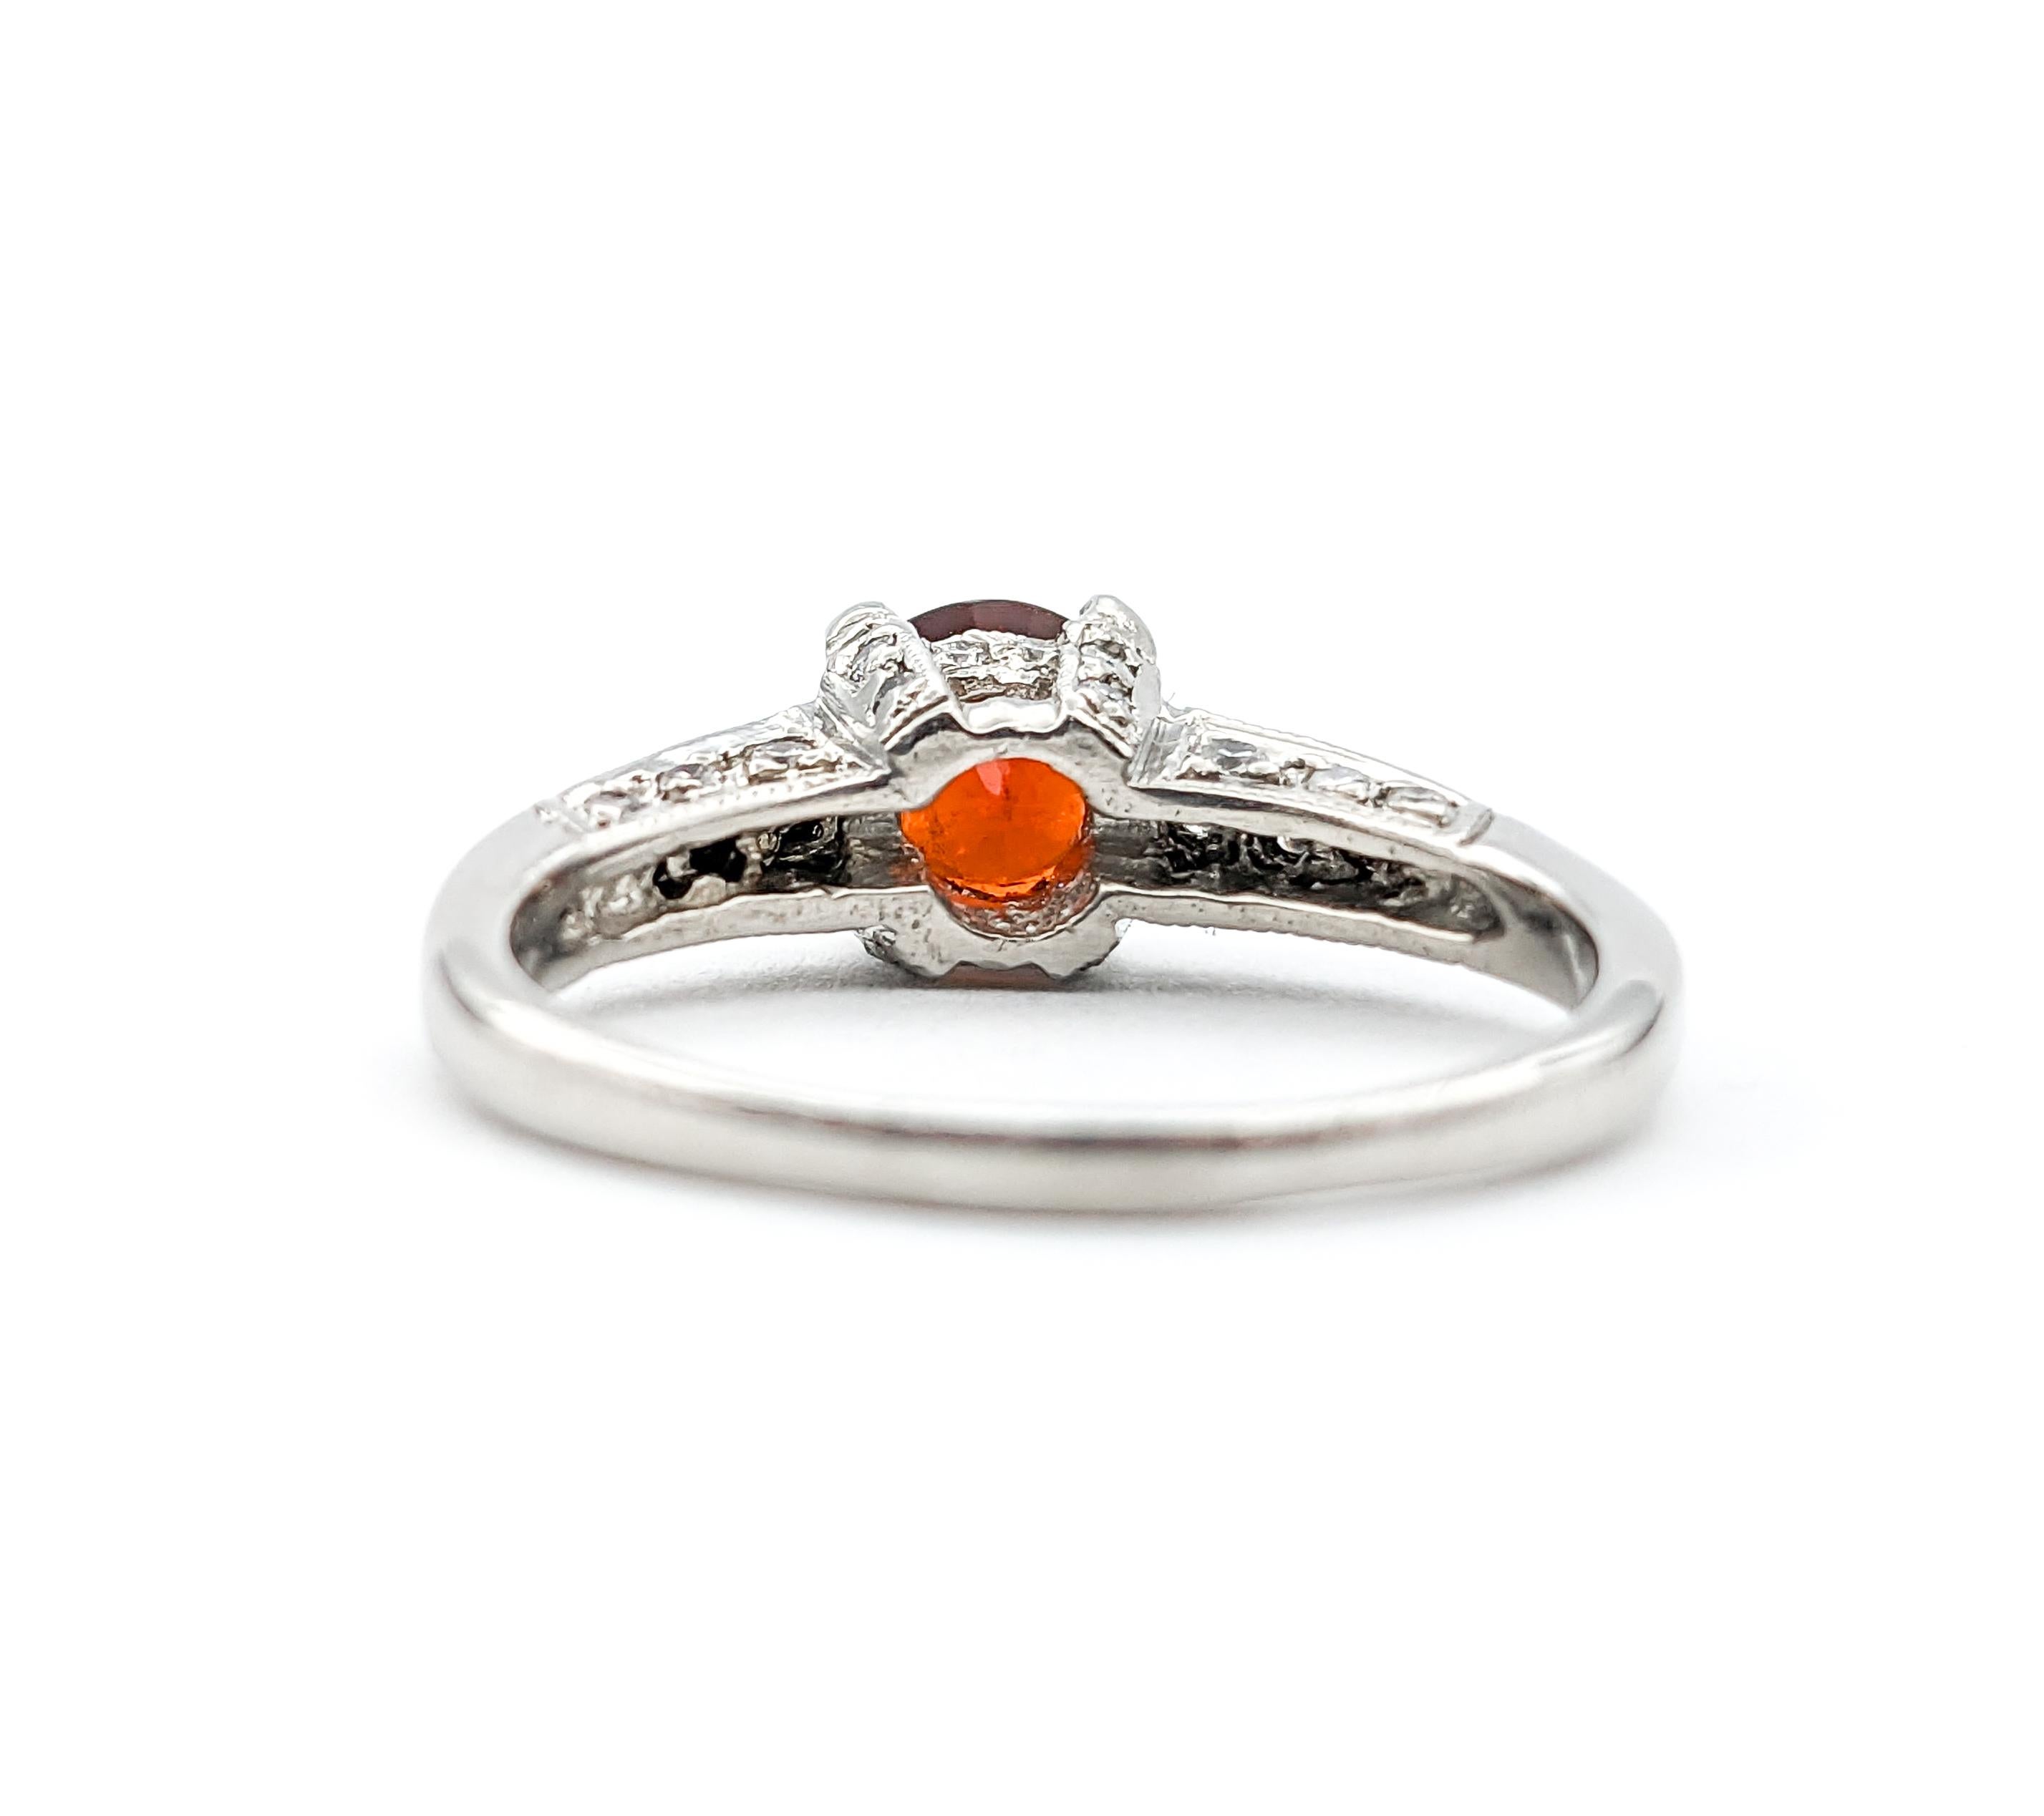 Designer Tacori 1.16ct Garnet & Diamond Ring In Platinum For Sale 3